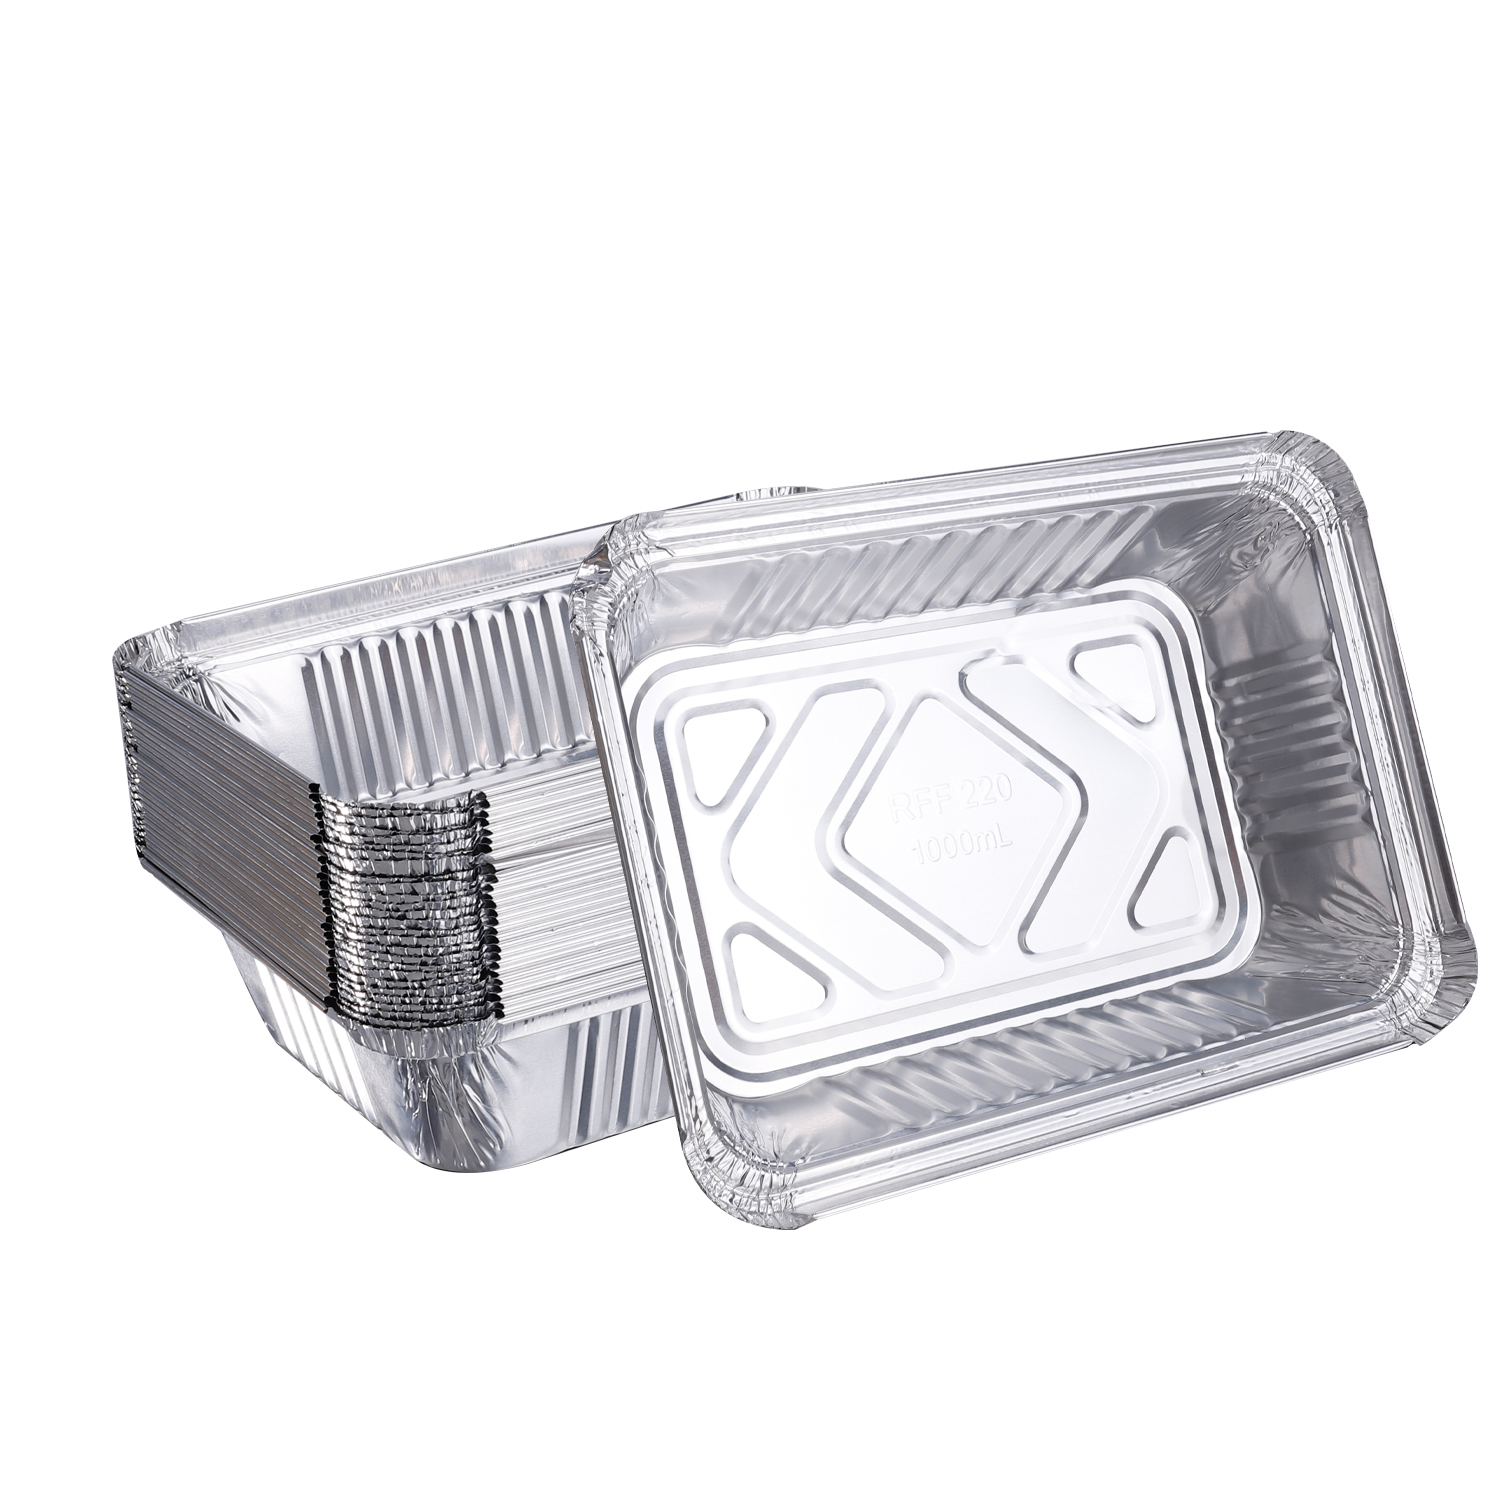 20PCS 450ML Disposable Aluminum Foil Lunch Box Aluminum Foil